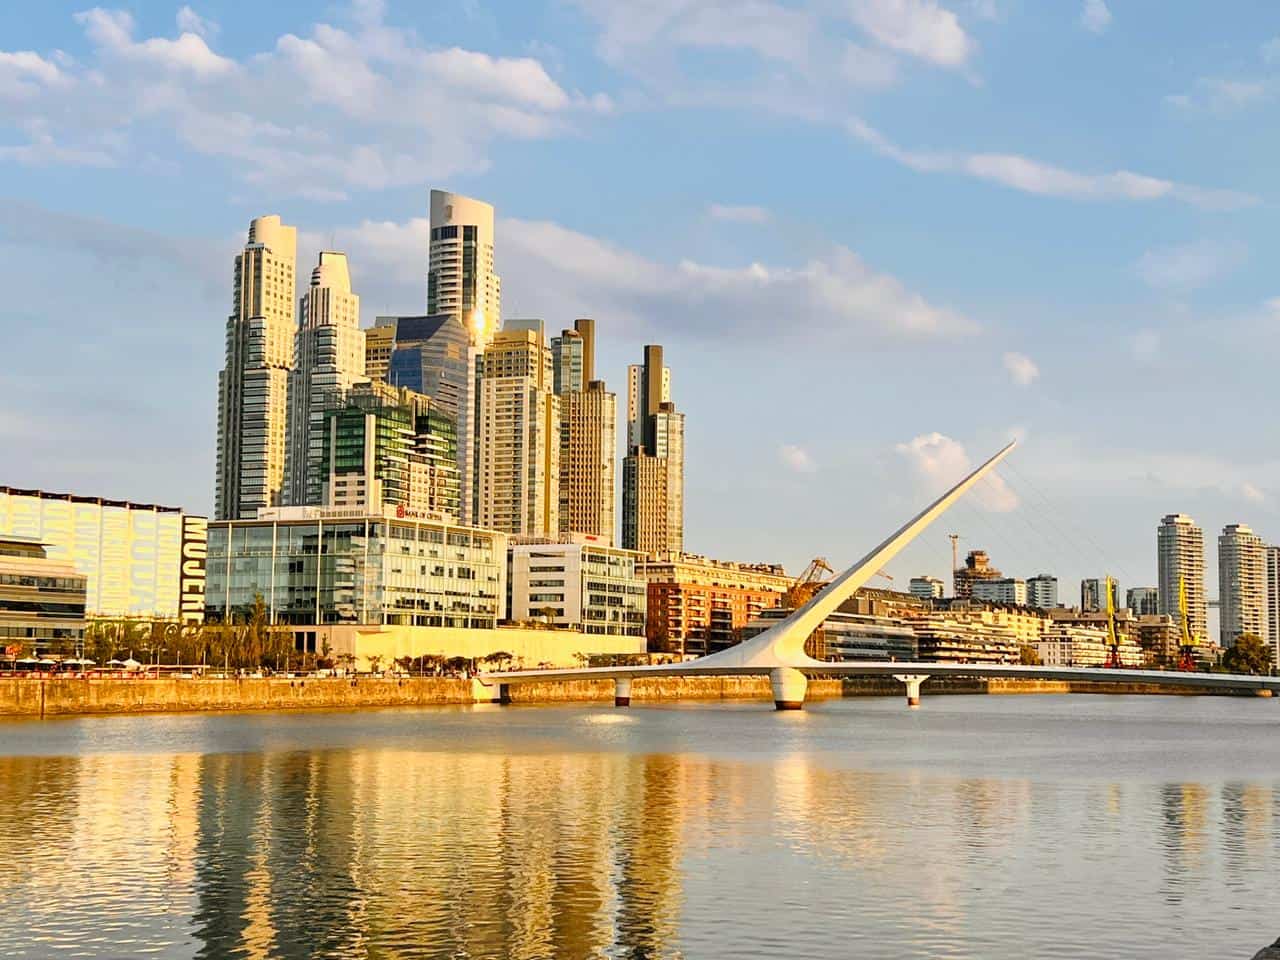 Hotéis baratos em Buenos Aires: onde ficar na capital da Argentina com bom custo-benefício